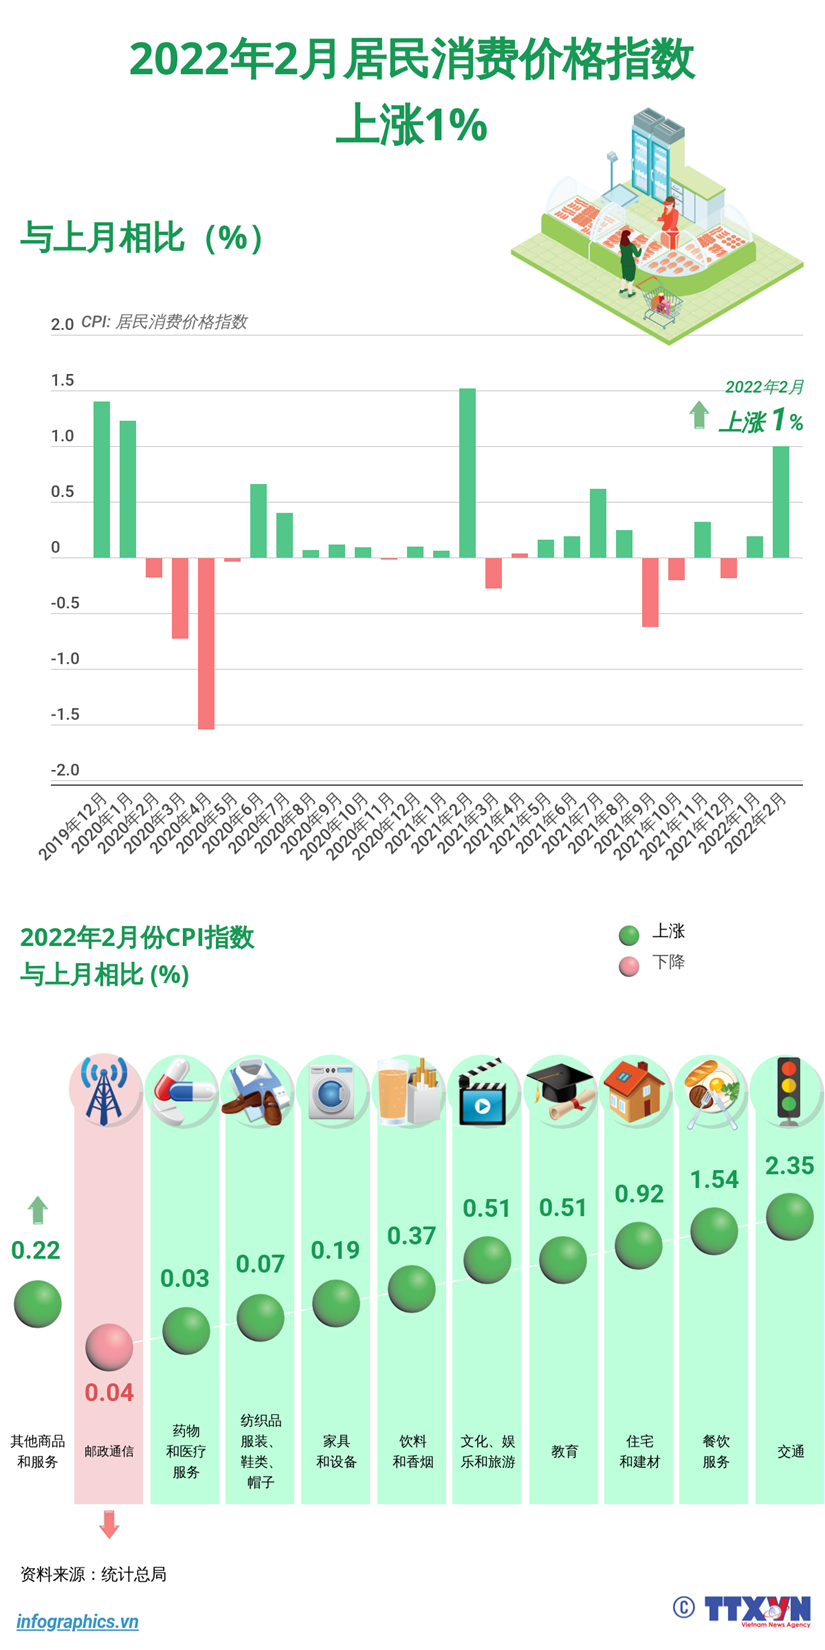 图表新闻：2022年2月居民消费价格指数上涨1% hinh anh 1